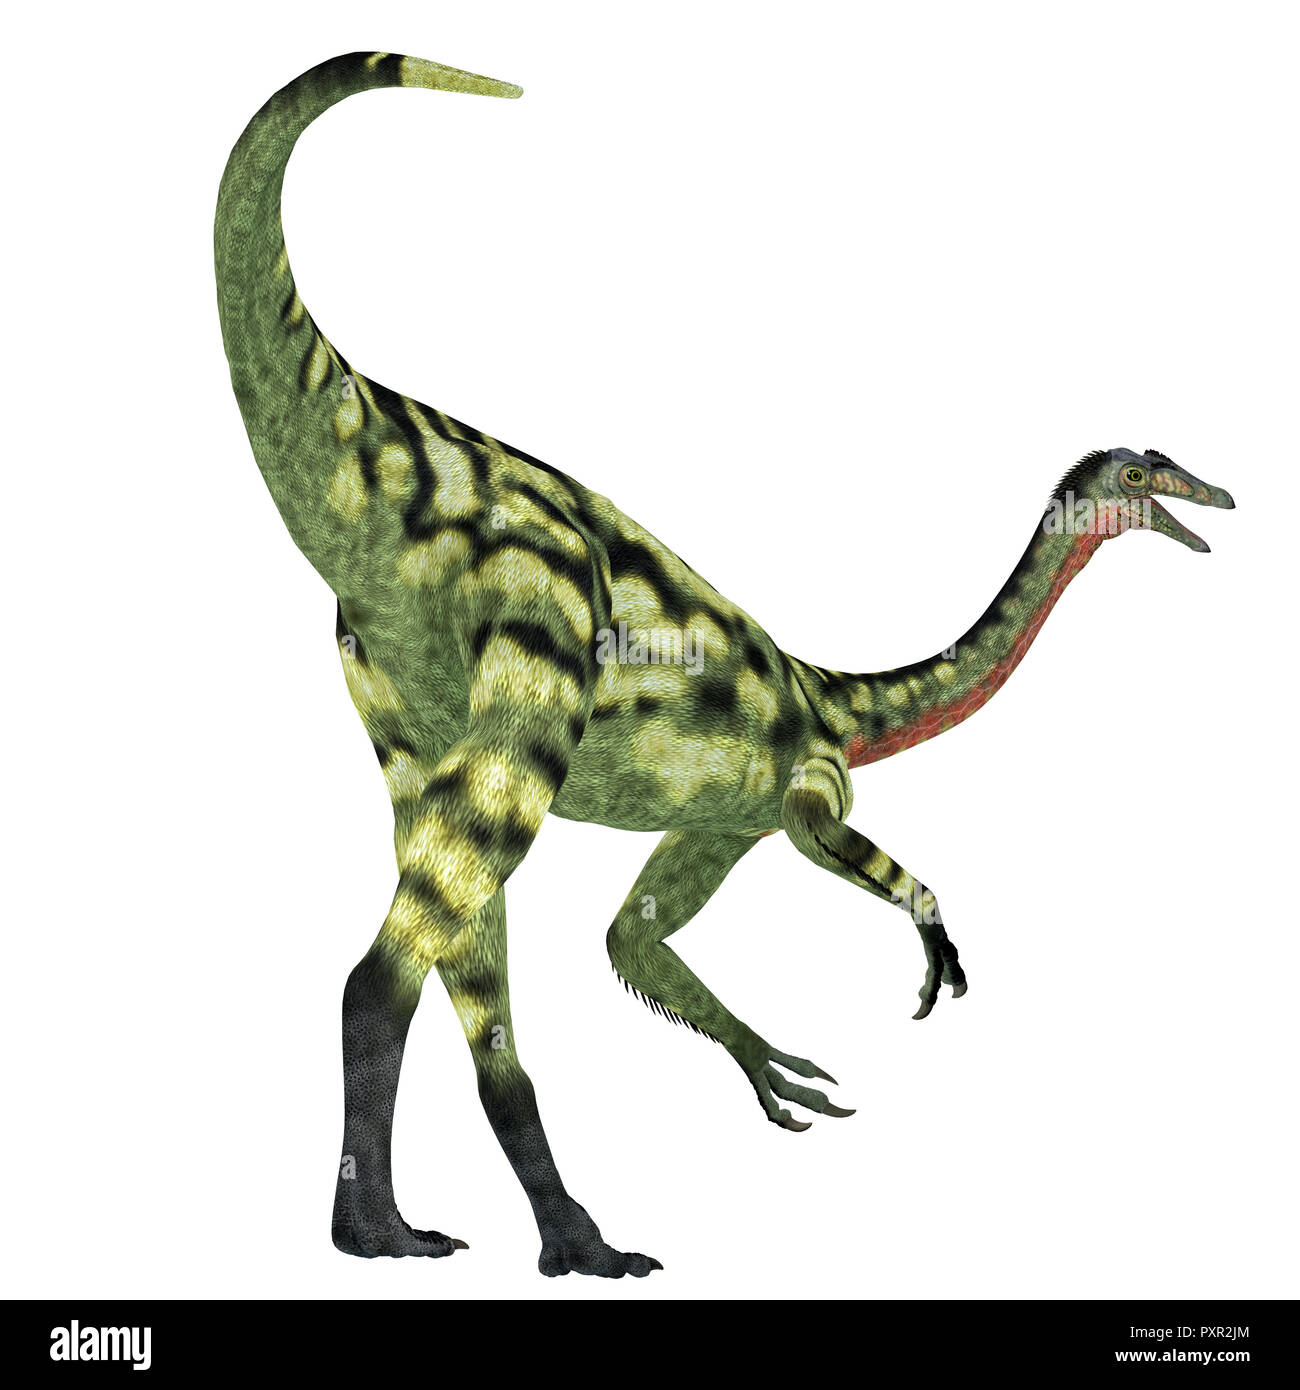 Paleoexhibit: Deinocheirus the magnificent